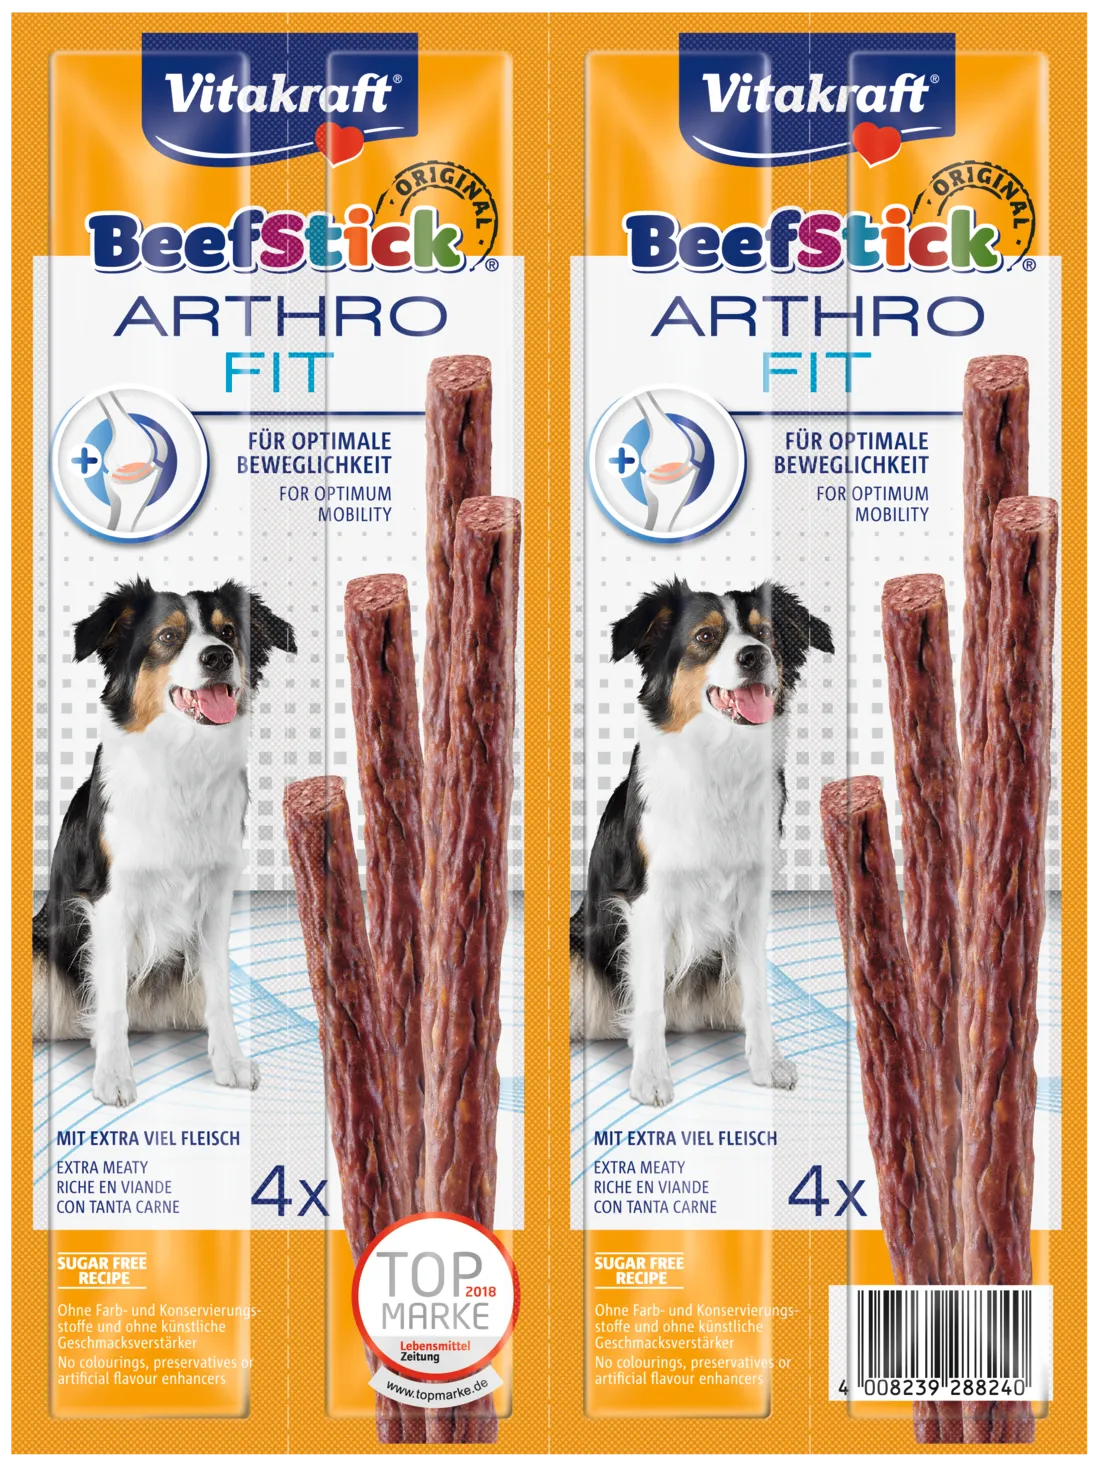 Vitakraft Beef Stick Arthro Fit kabanos z wołowiną dla psa, 4x12 g